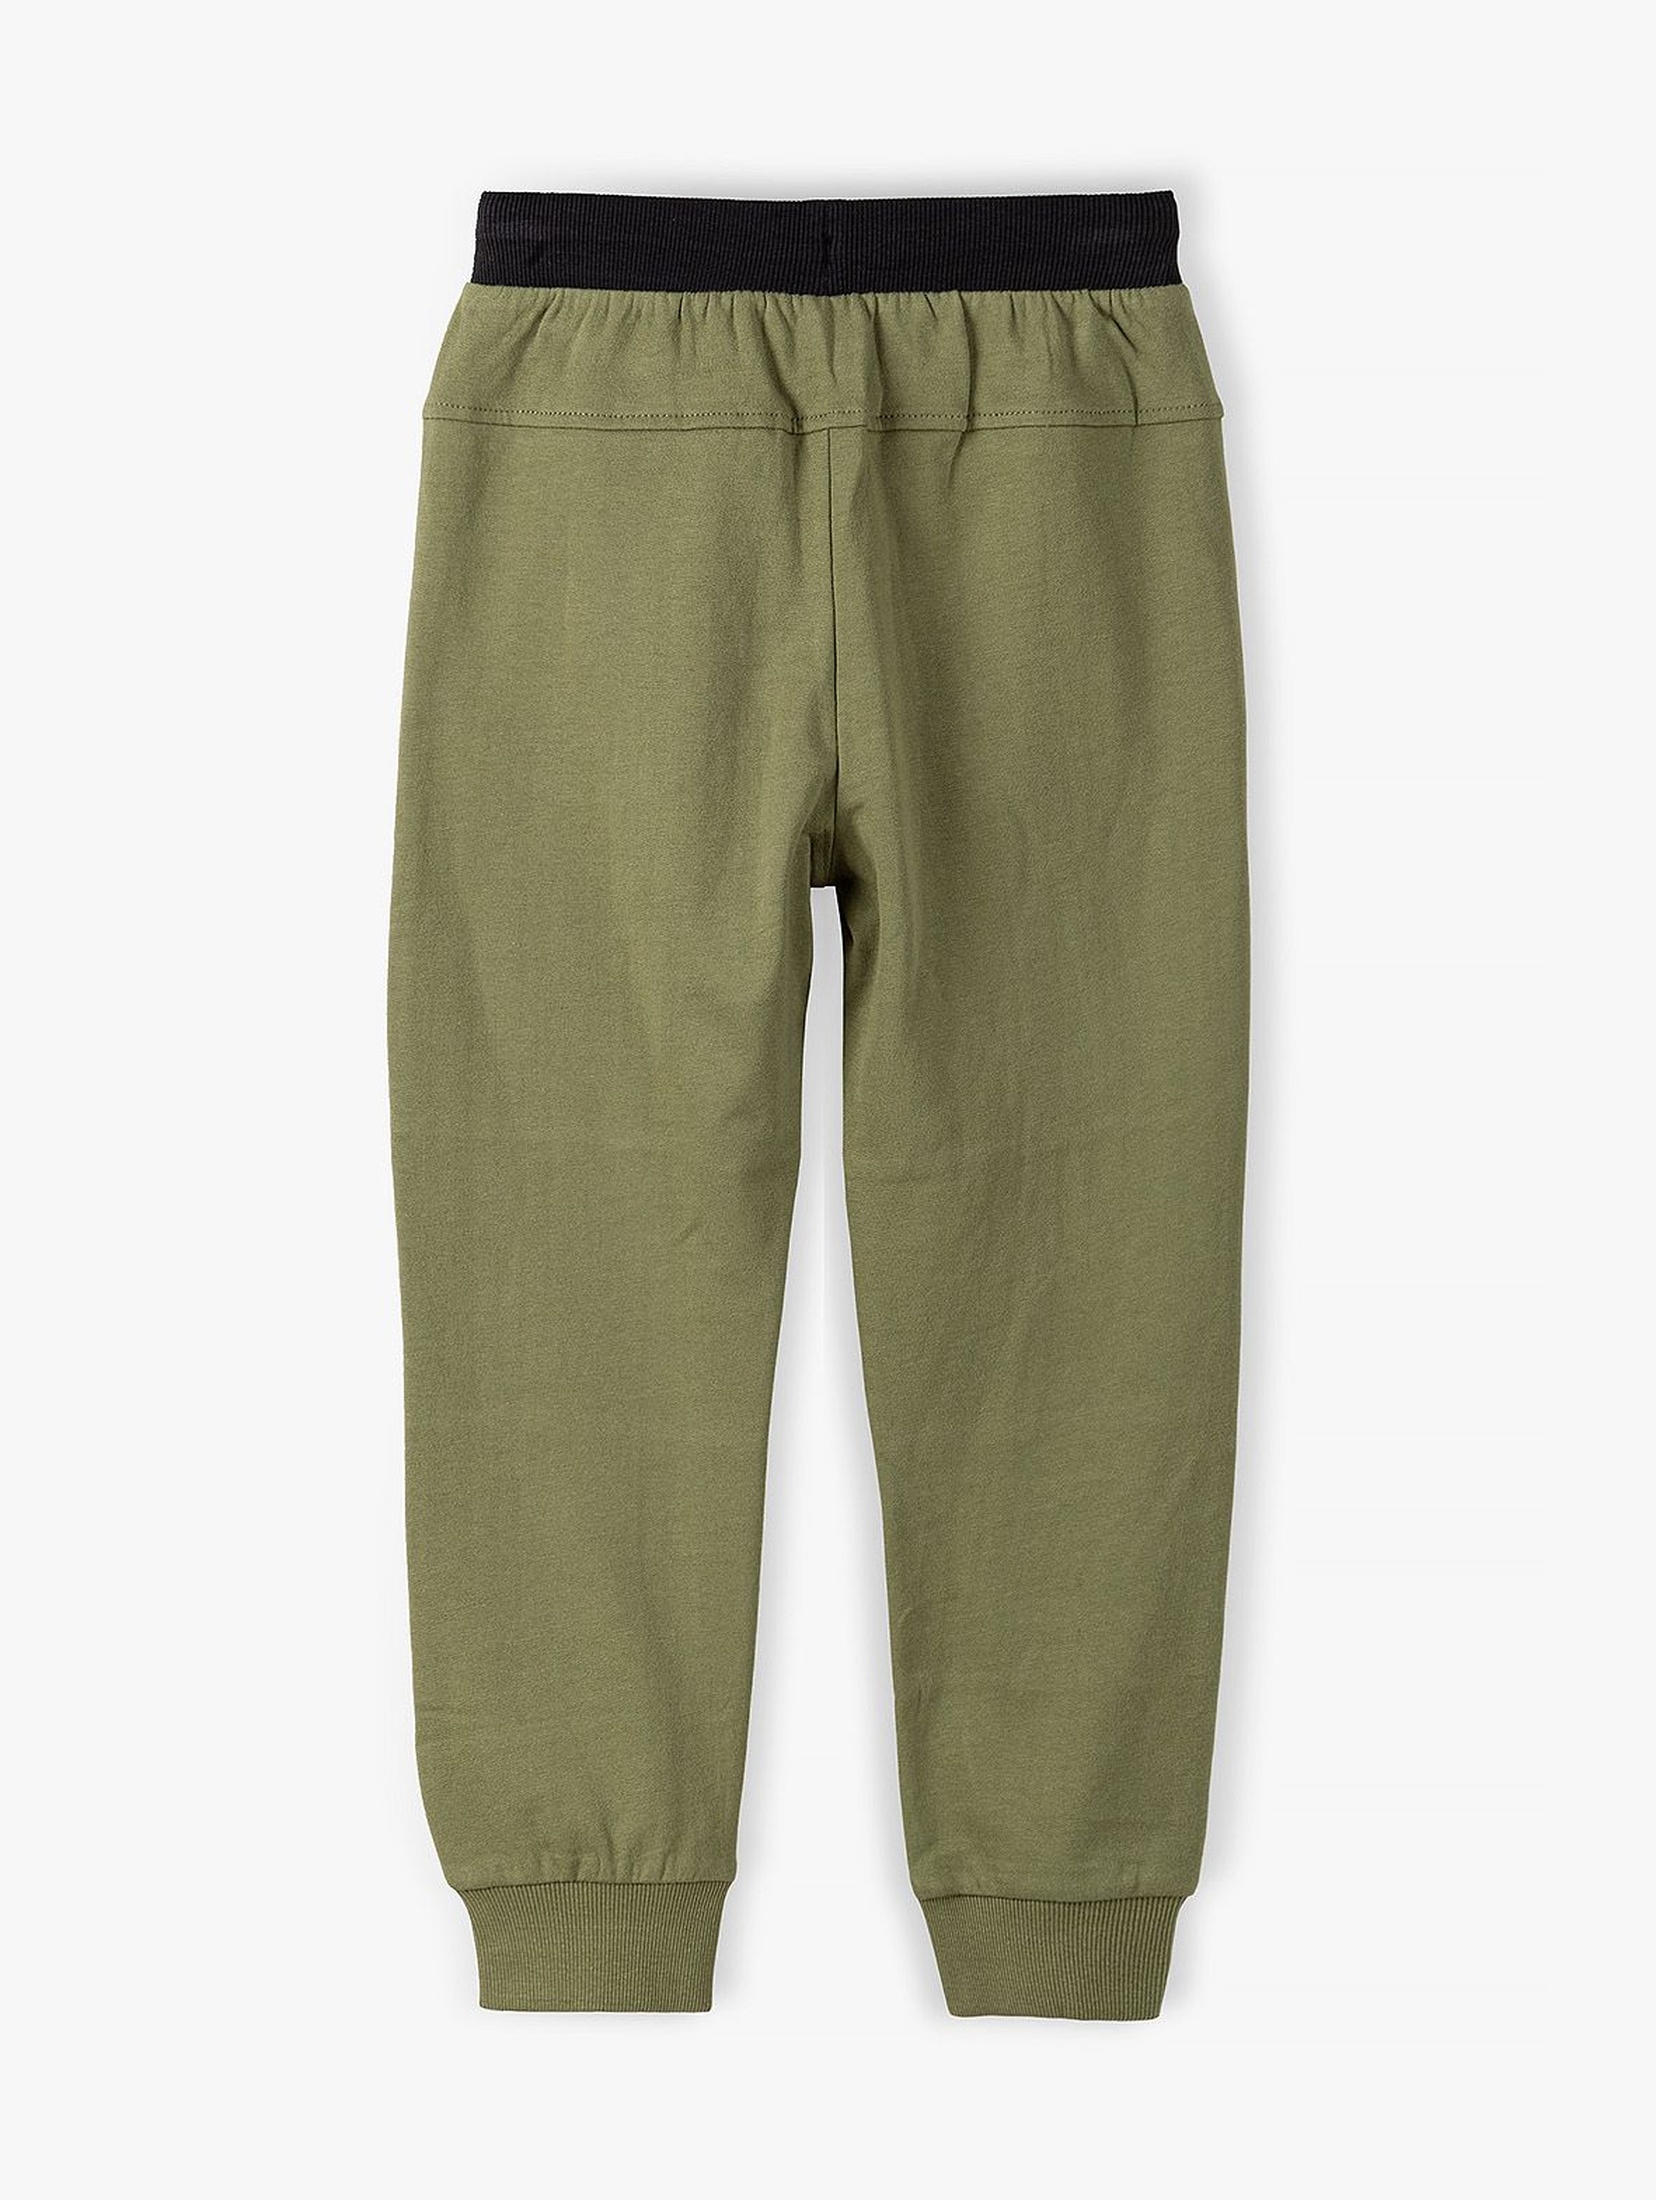 Spodnie dresowe chłopięce w kolorze khaki- 100% Bawełna